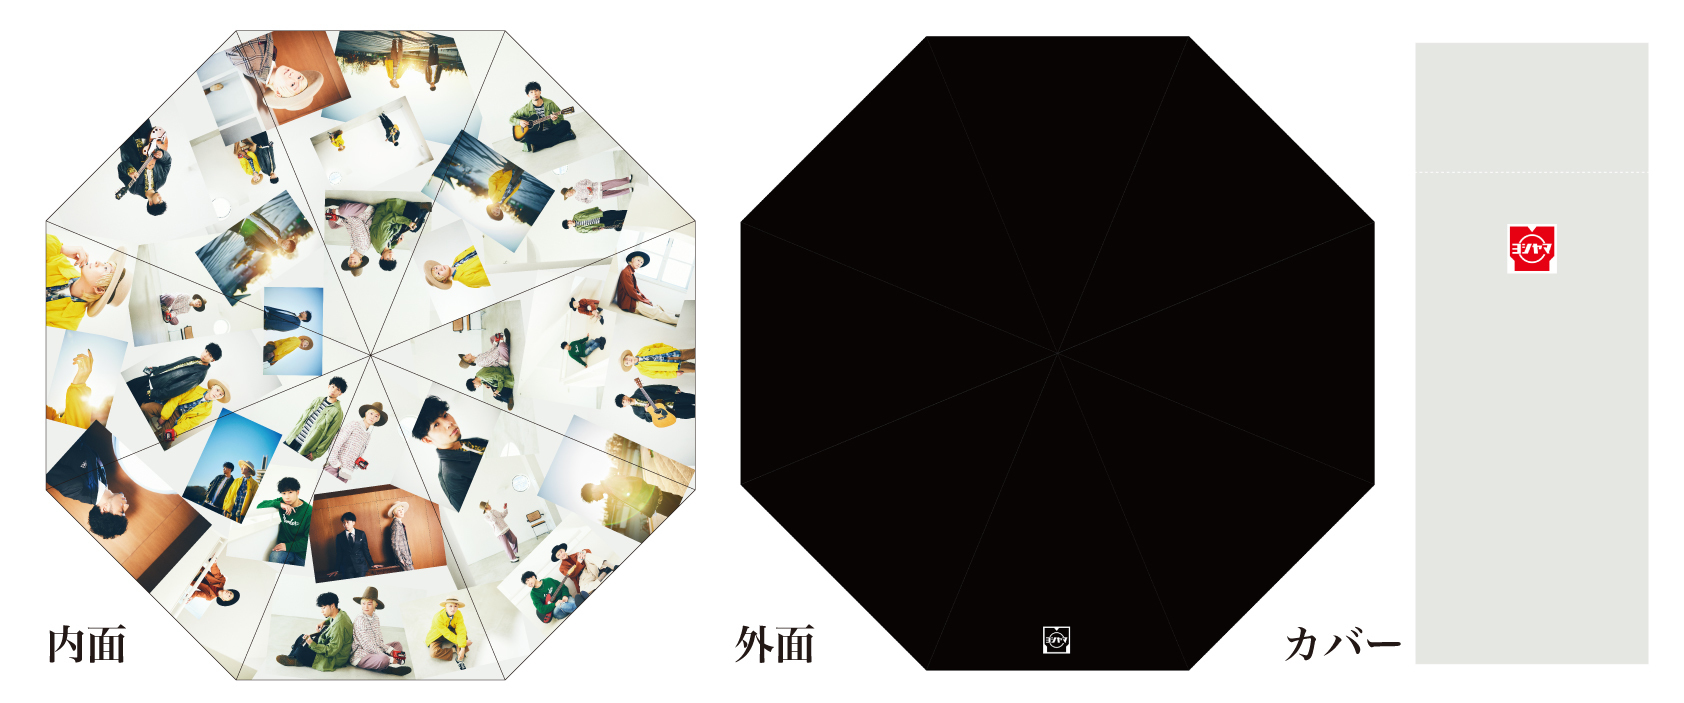 吉田山田 『欲望』スーパーデラックス版 CD/ブルーレイ SCCA-00067 Tシャツ フォトブックレット付き